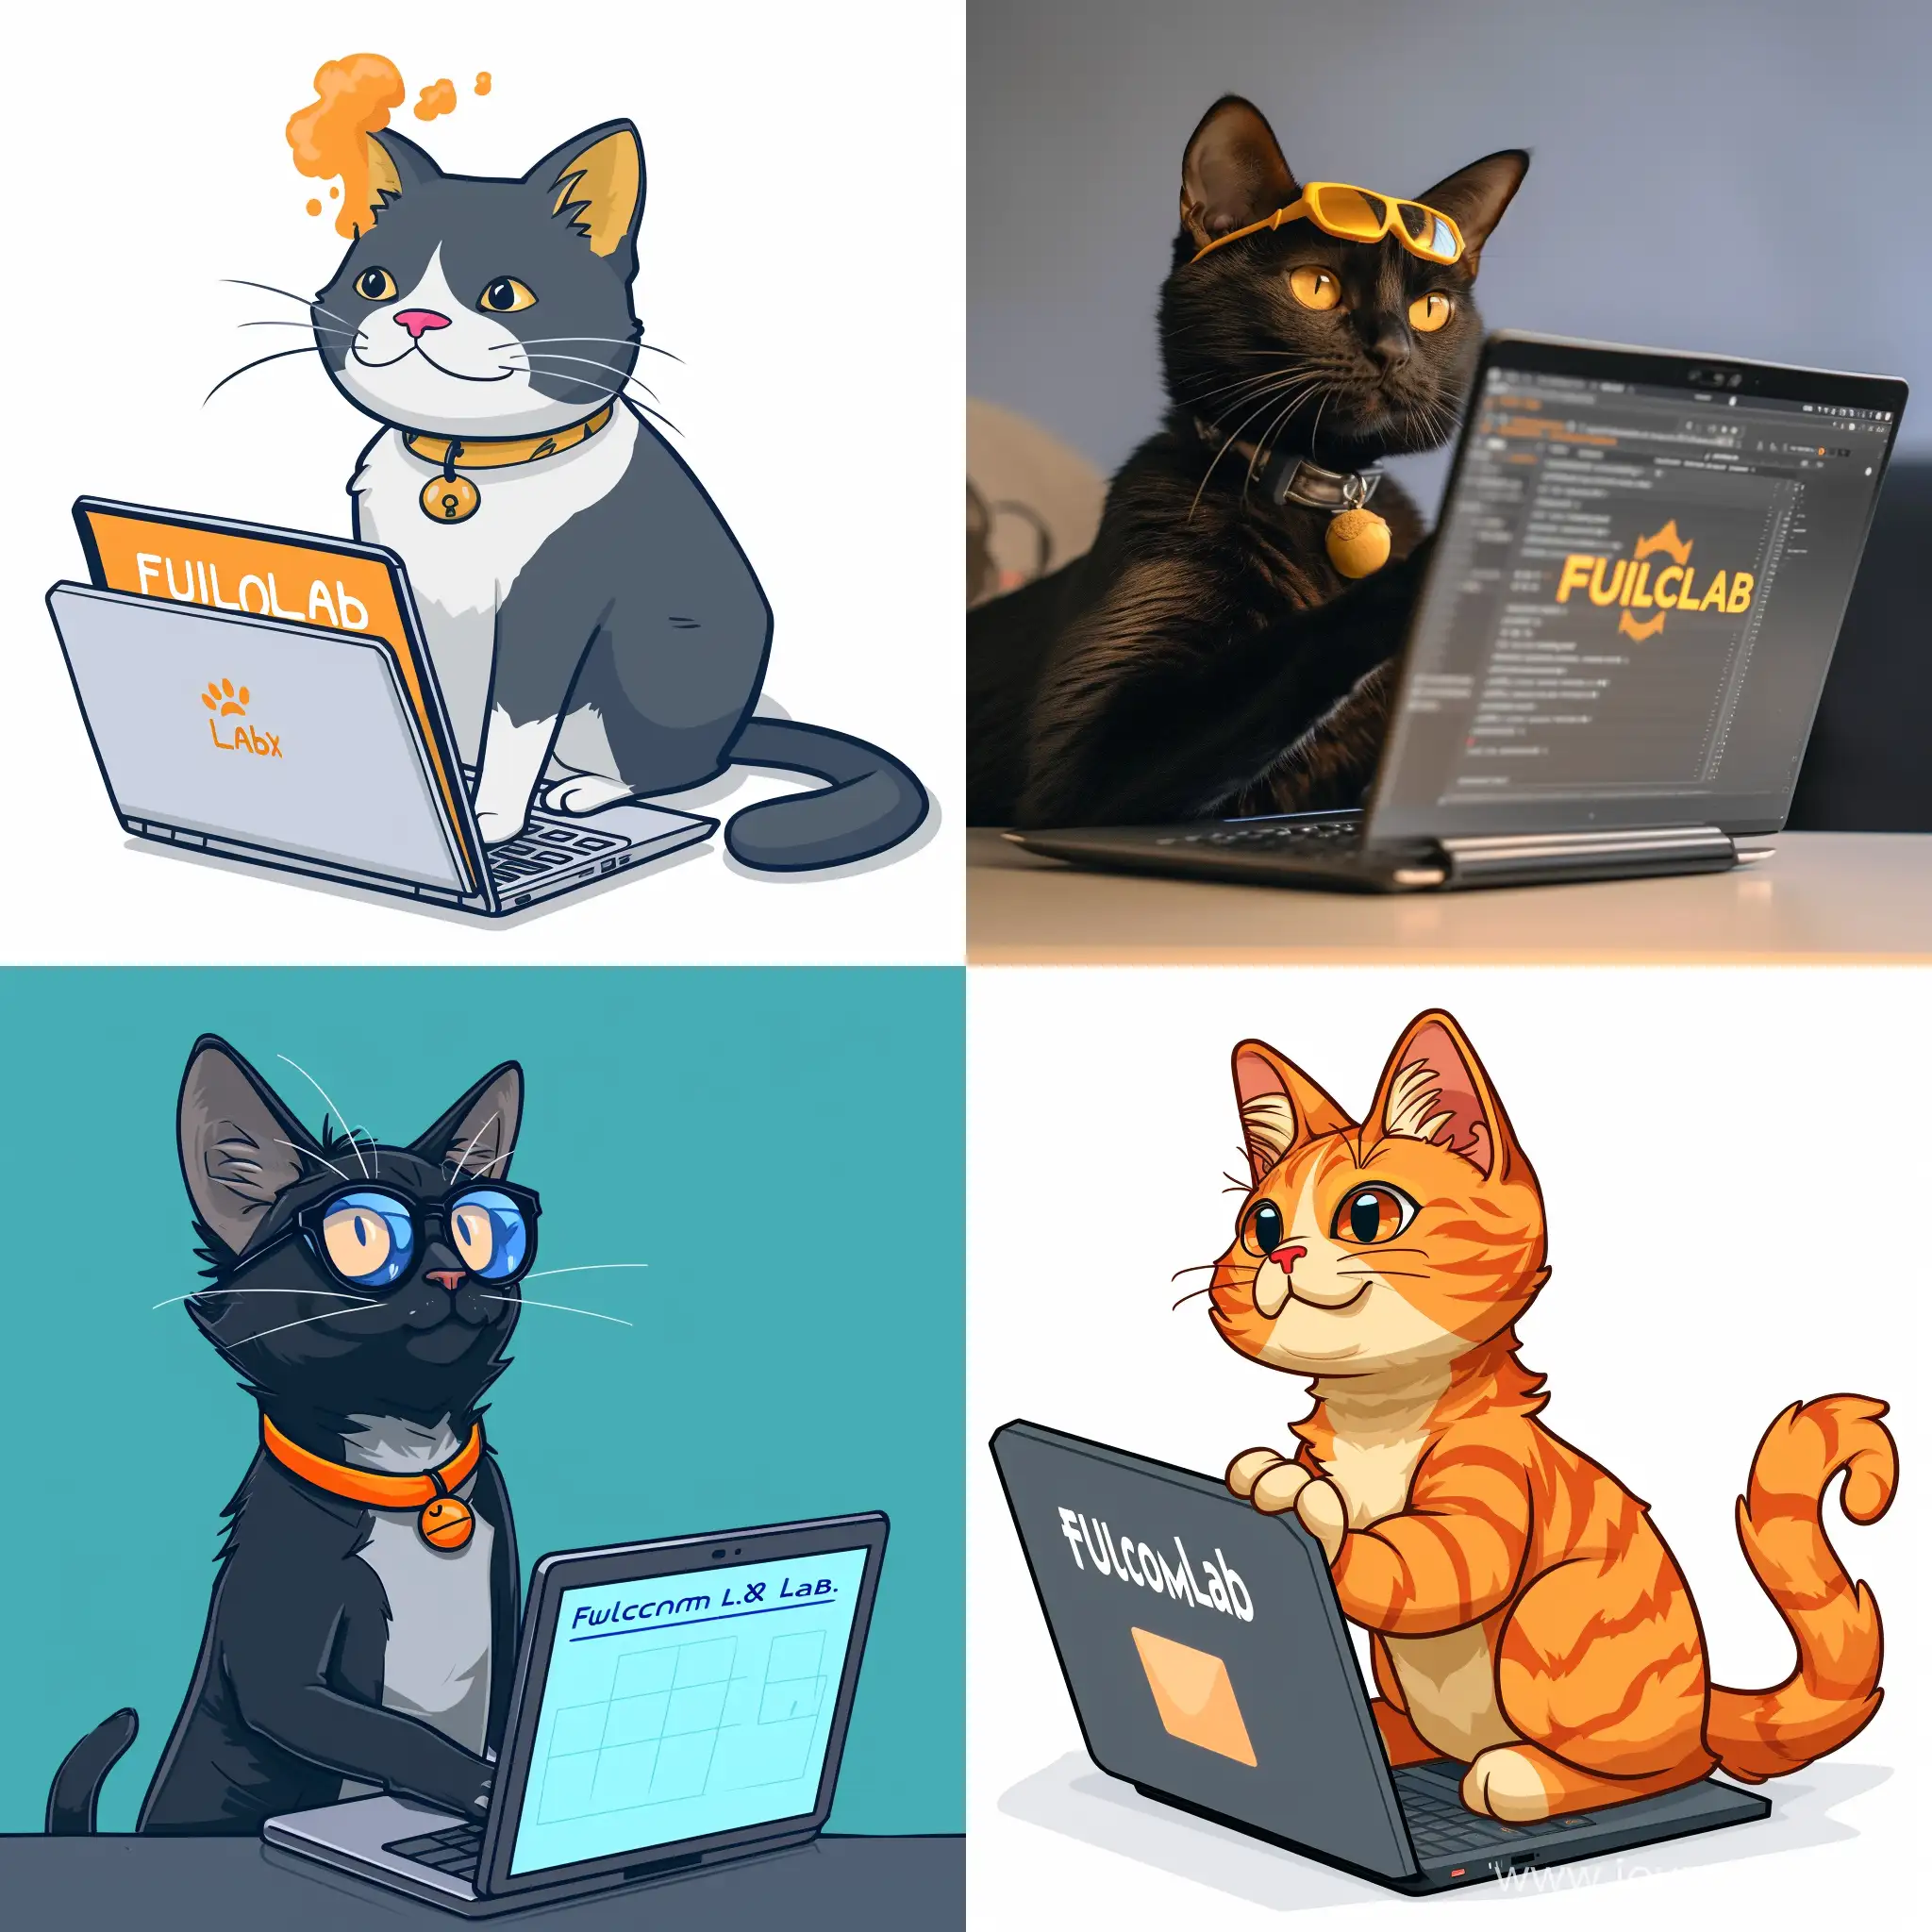 Разработчик кот за ноутбуком из команды Fulcrum Lab, название компании "Fulcrum Lab" должно быть на картинке